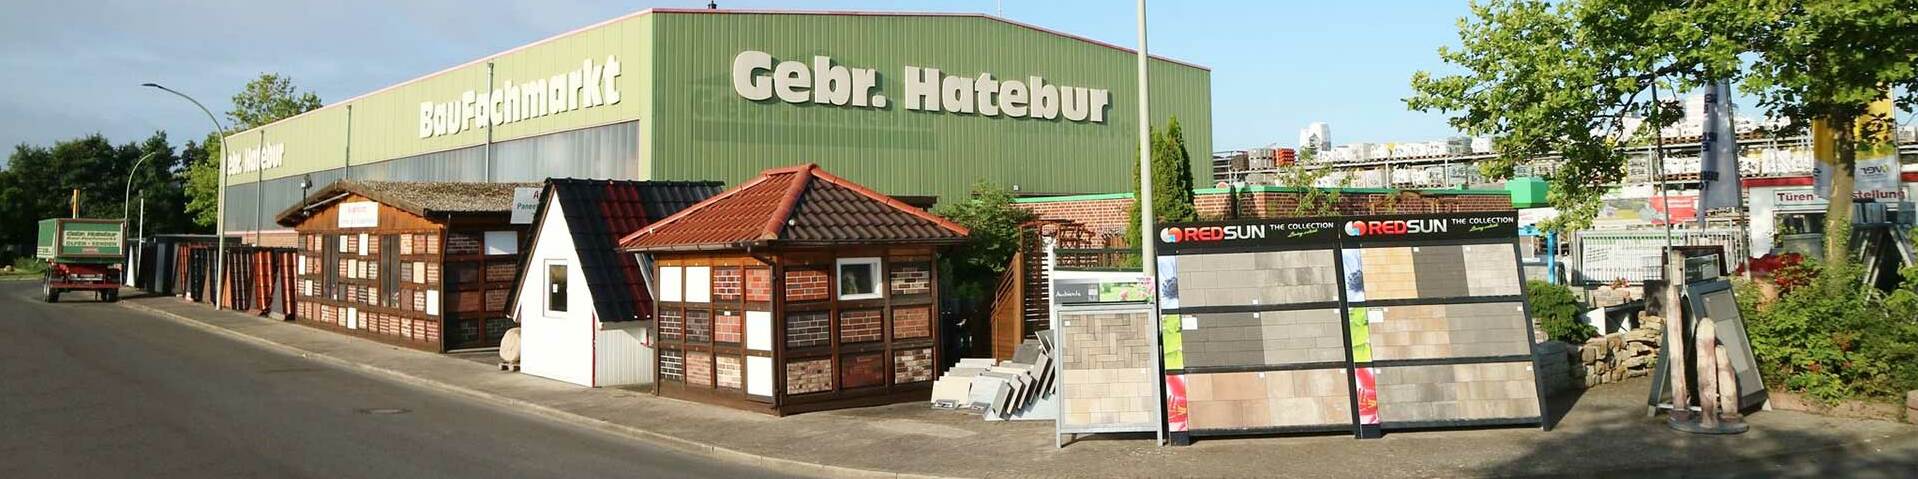 Gebr. Hatebur Baustoffhandel in Olfen und Senden